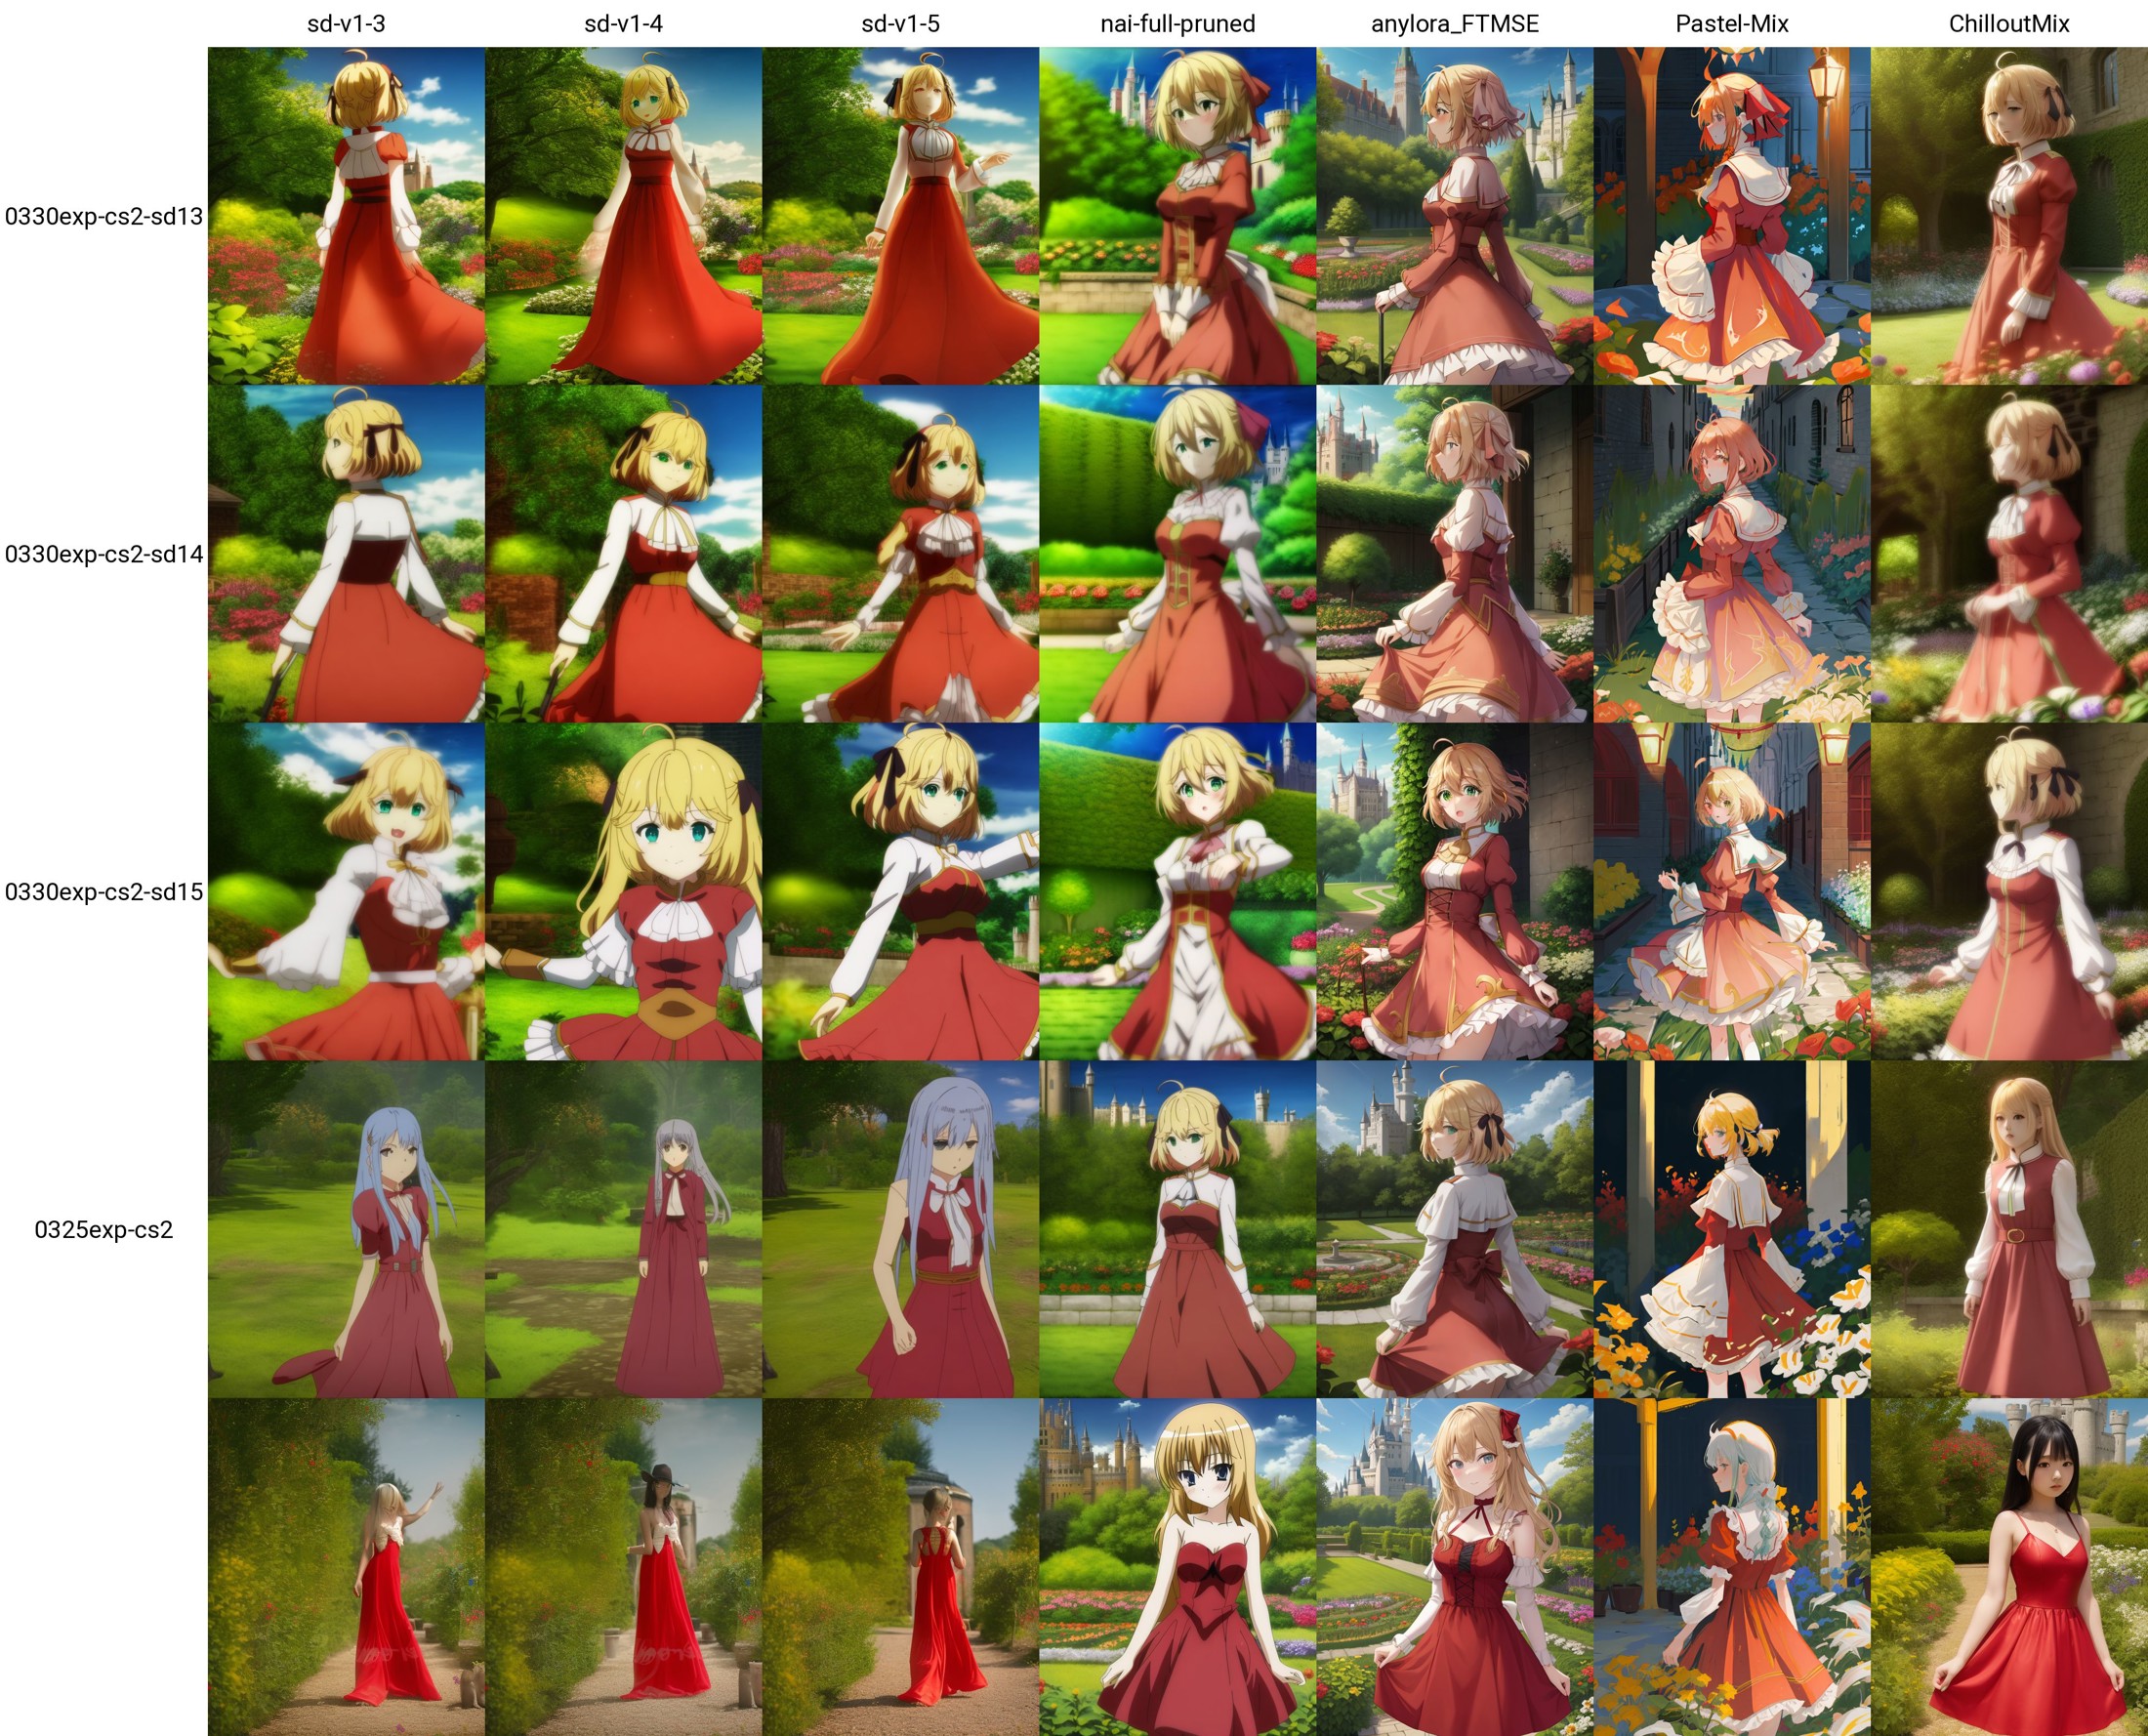 anisphia; 1girl, solo, red dress, anime coloring, cowboy shot, garden, castle
<lora:0330exp-cs2-sd13:1>